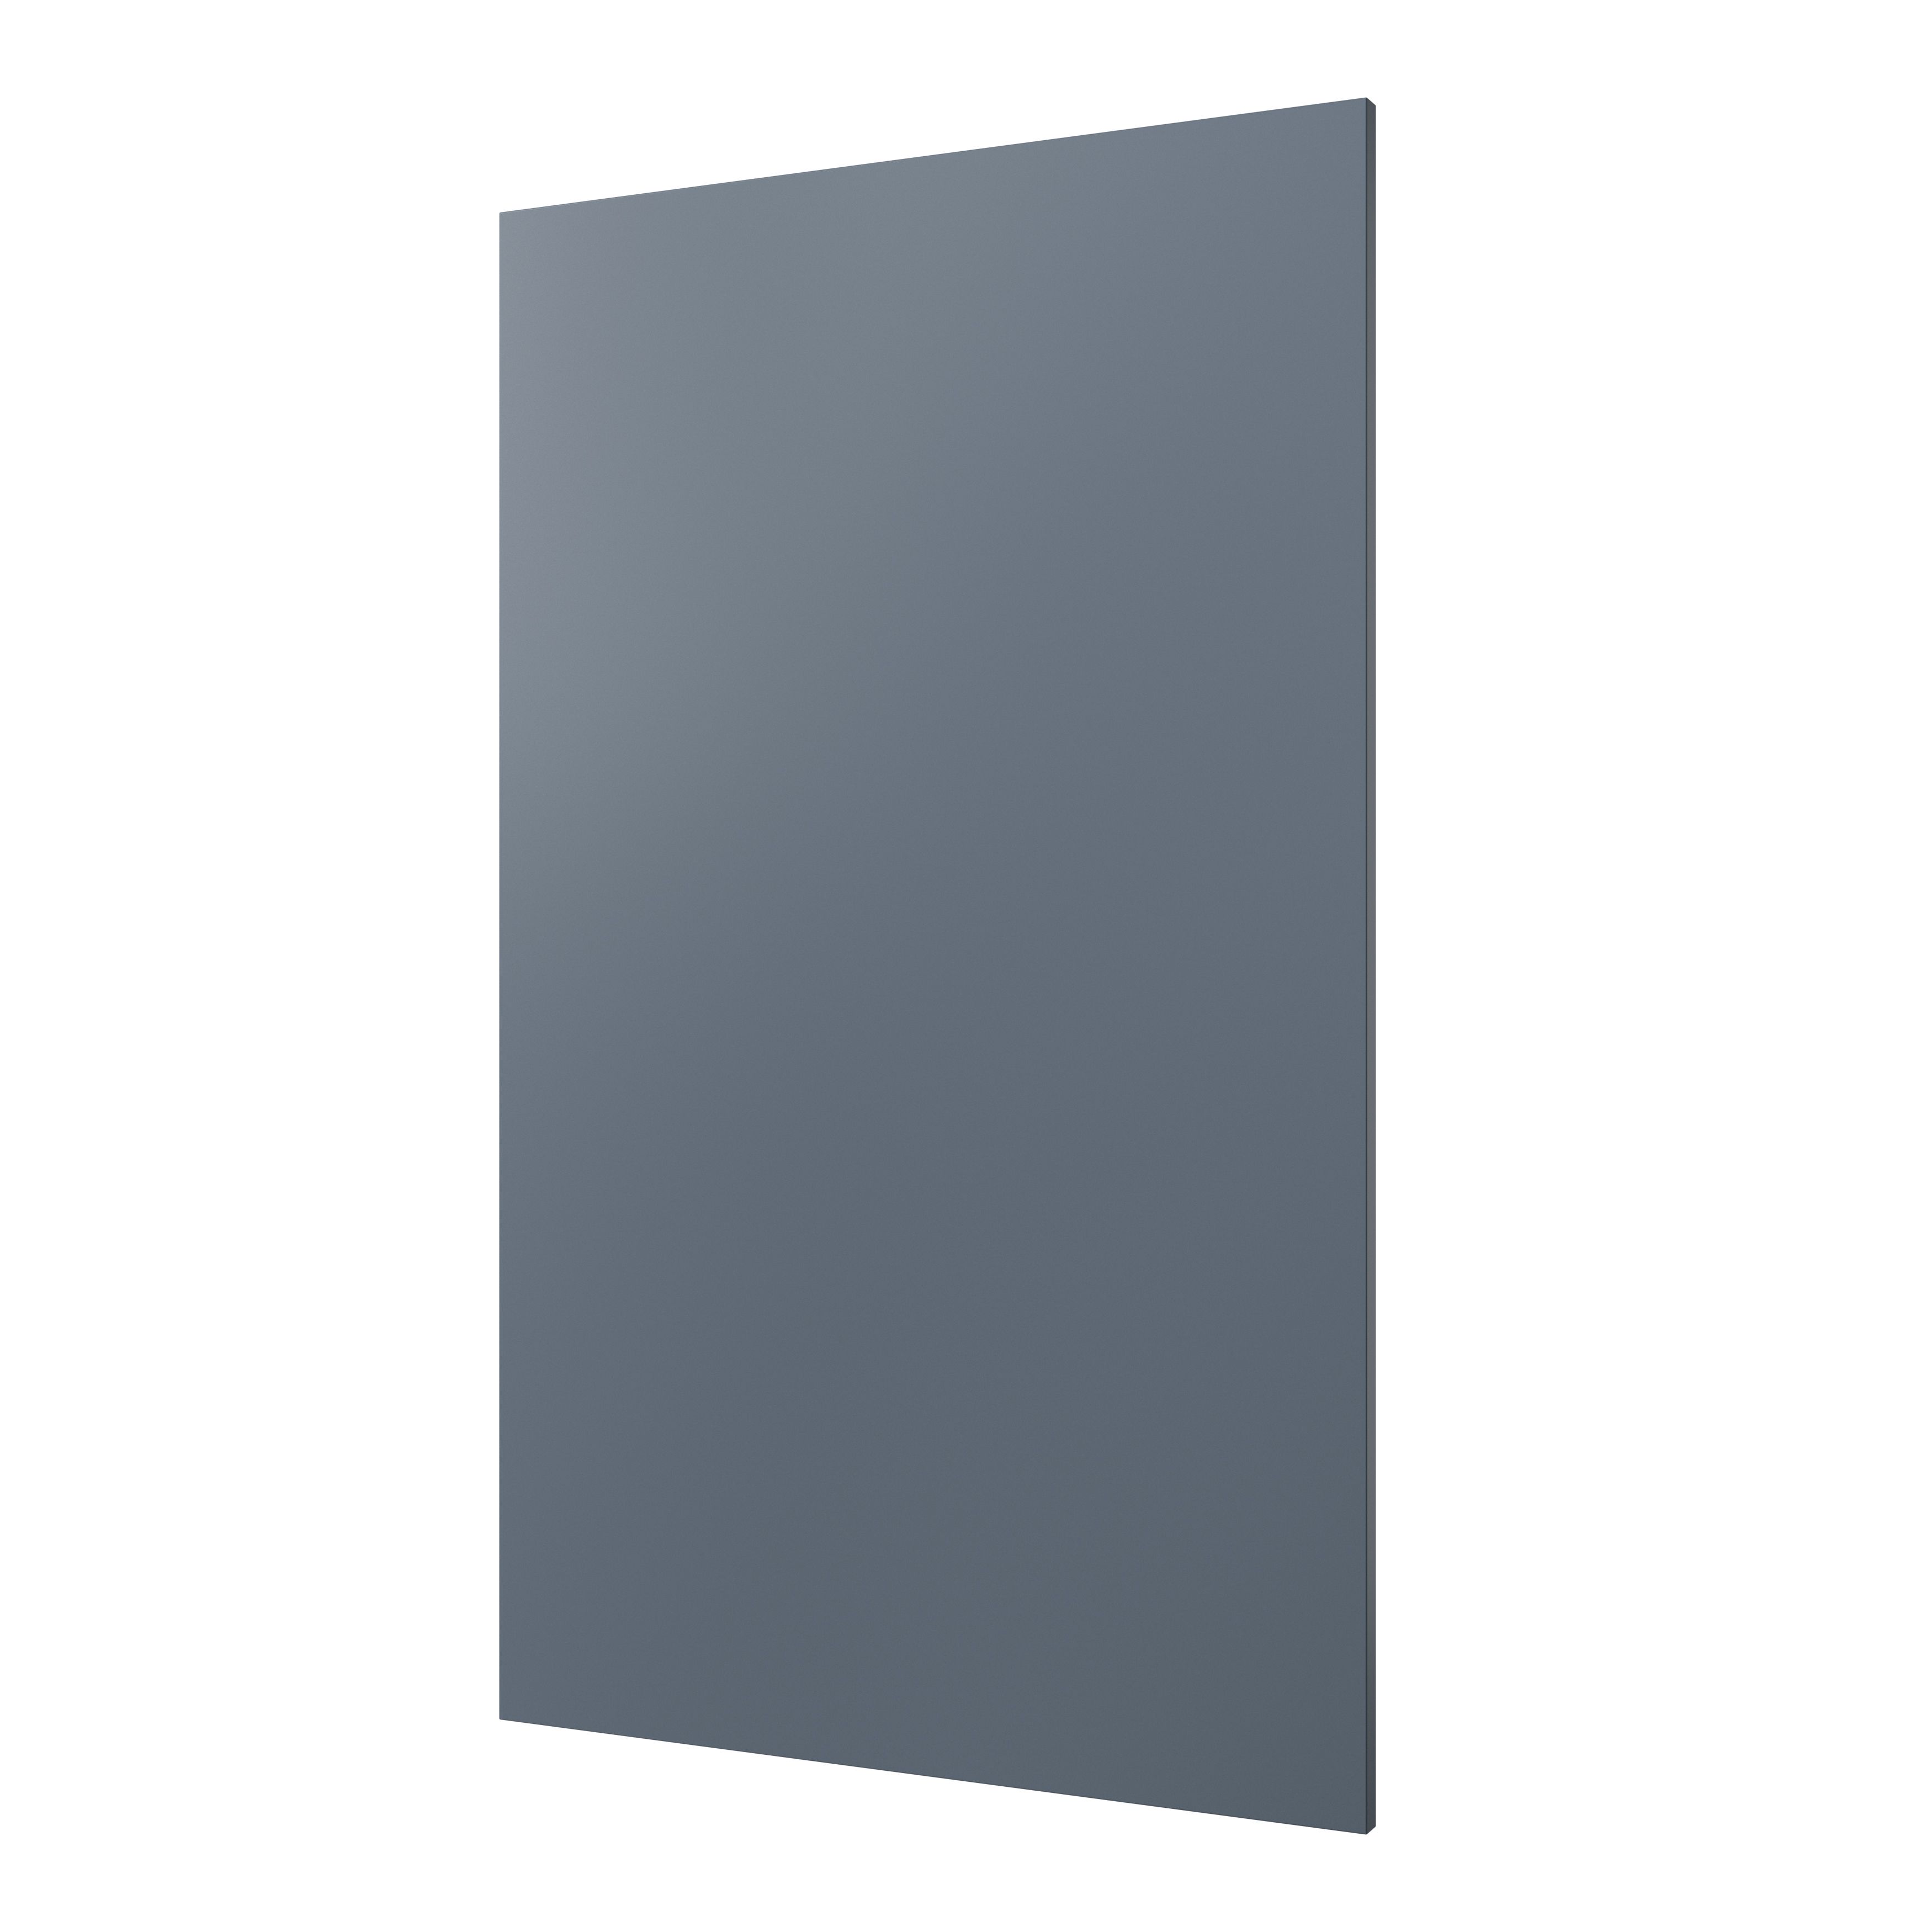 GoodHome Alisma Matt blue slab 50:50 Larder/Fridge Cabinet door (W)600mm (H)1001mm (T)18mm